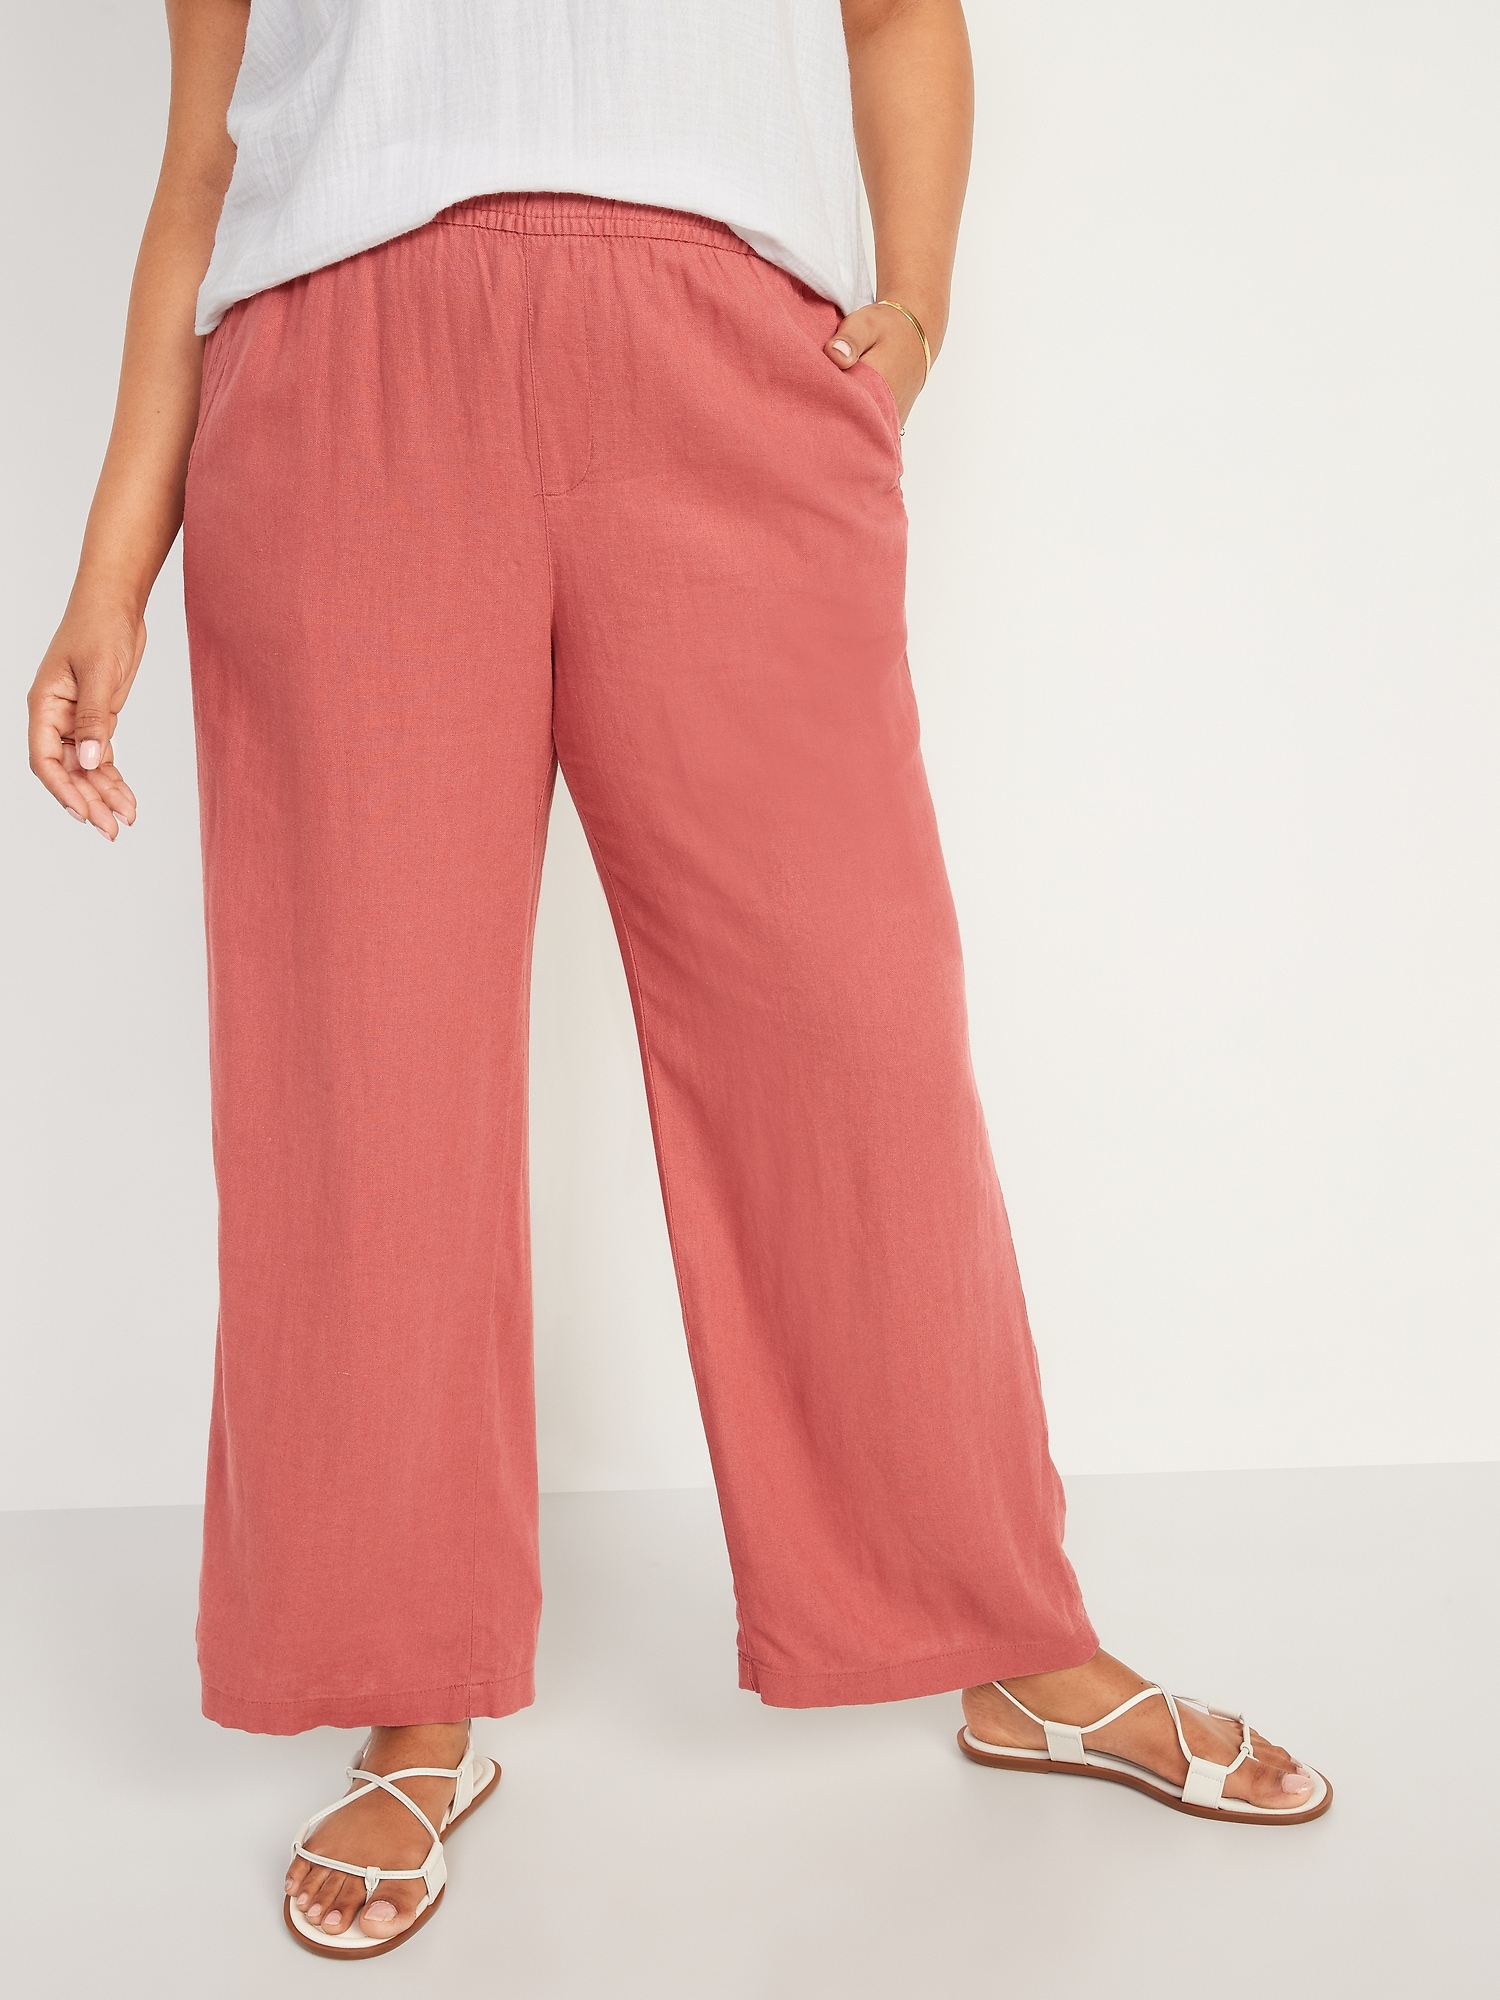 Linen Pants Women Summer Tall Women's Flowy Lounge Pants Comfy